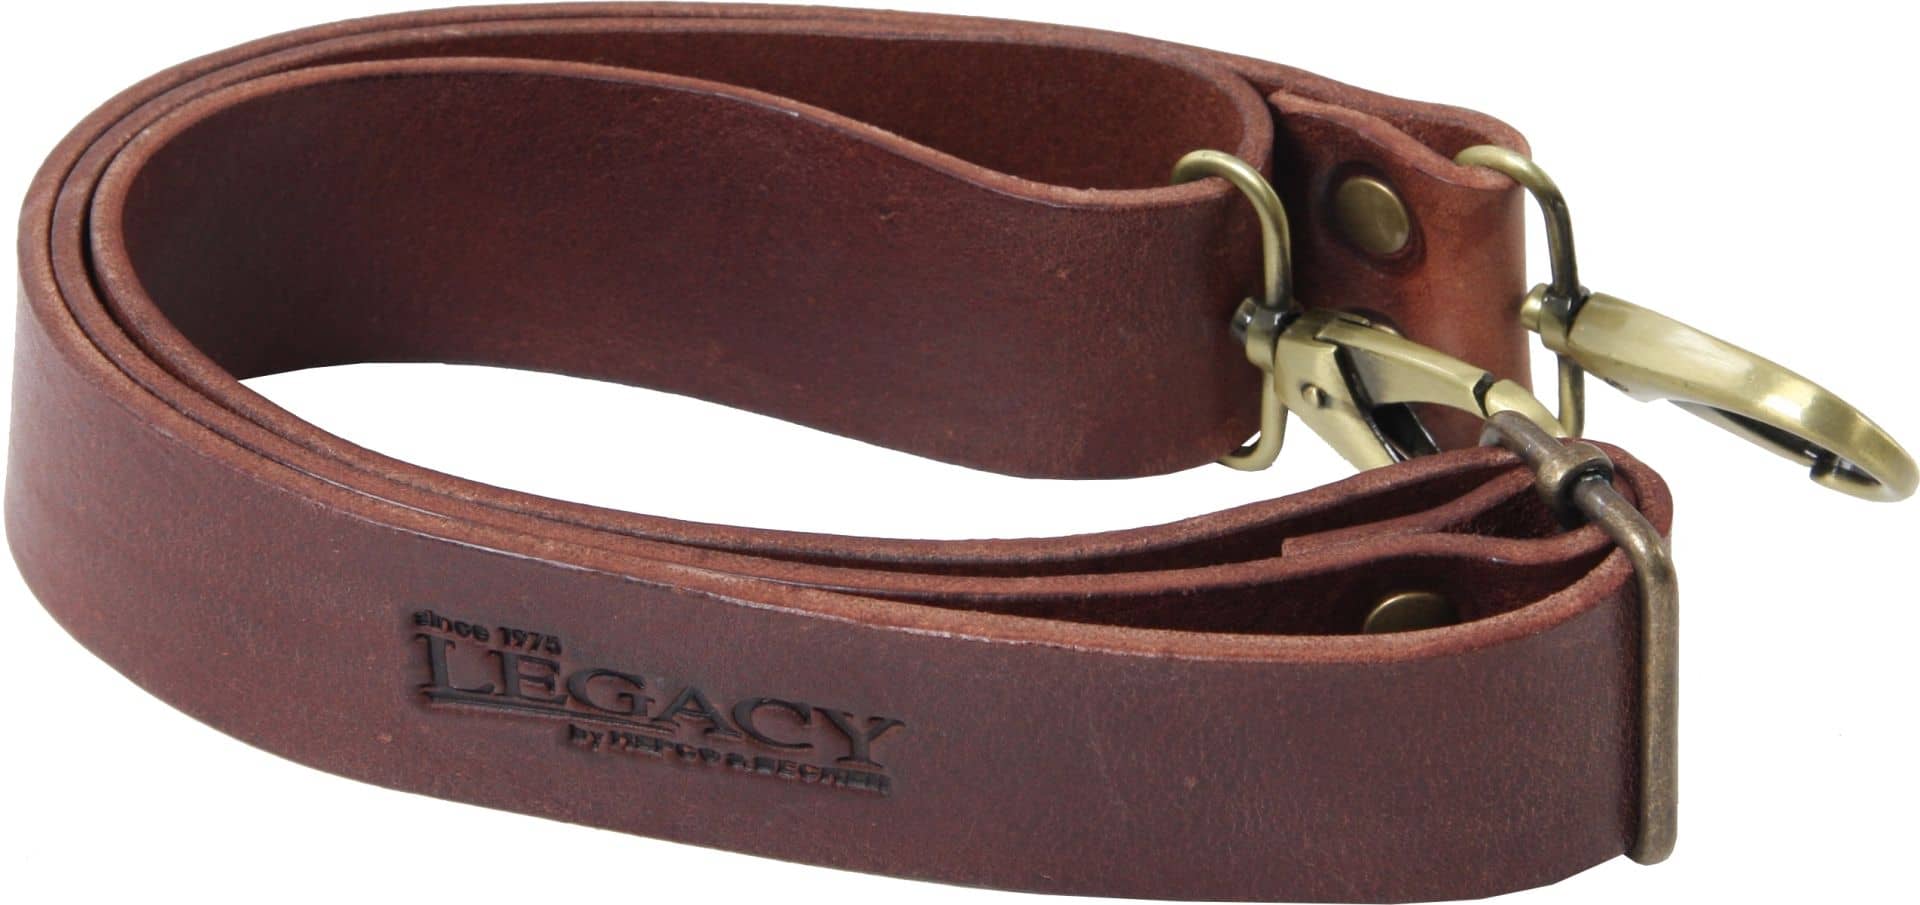 Legacy shoulder strap leather  Brown